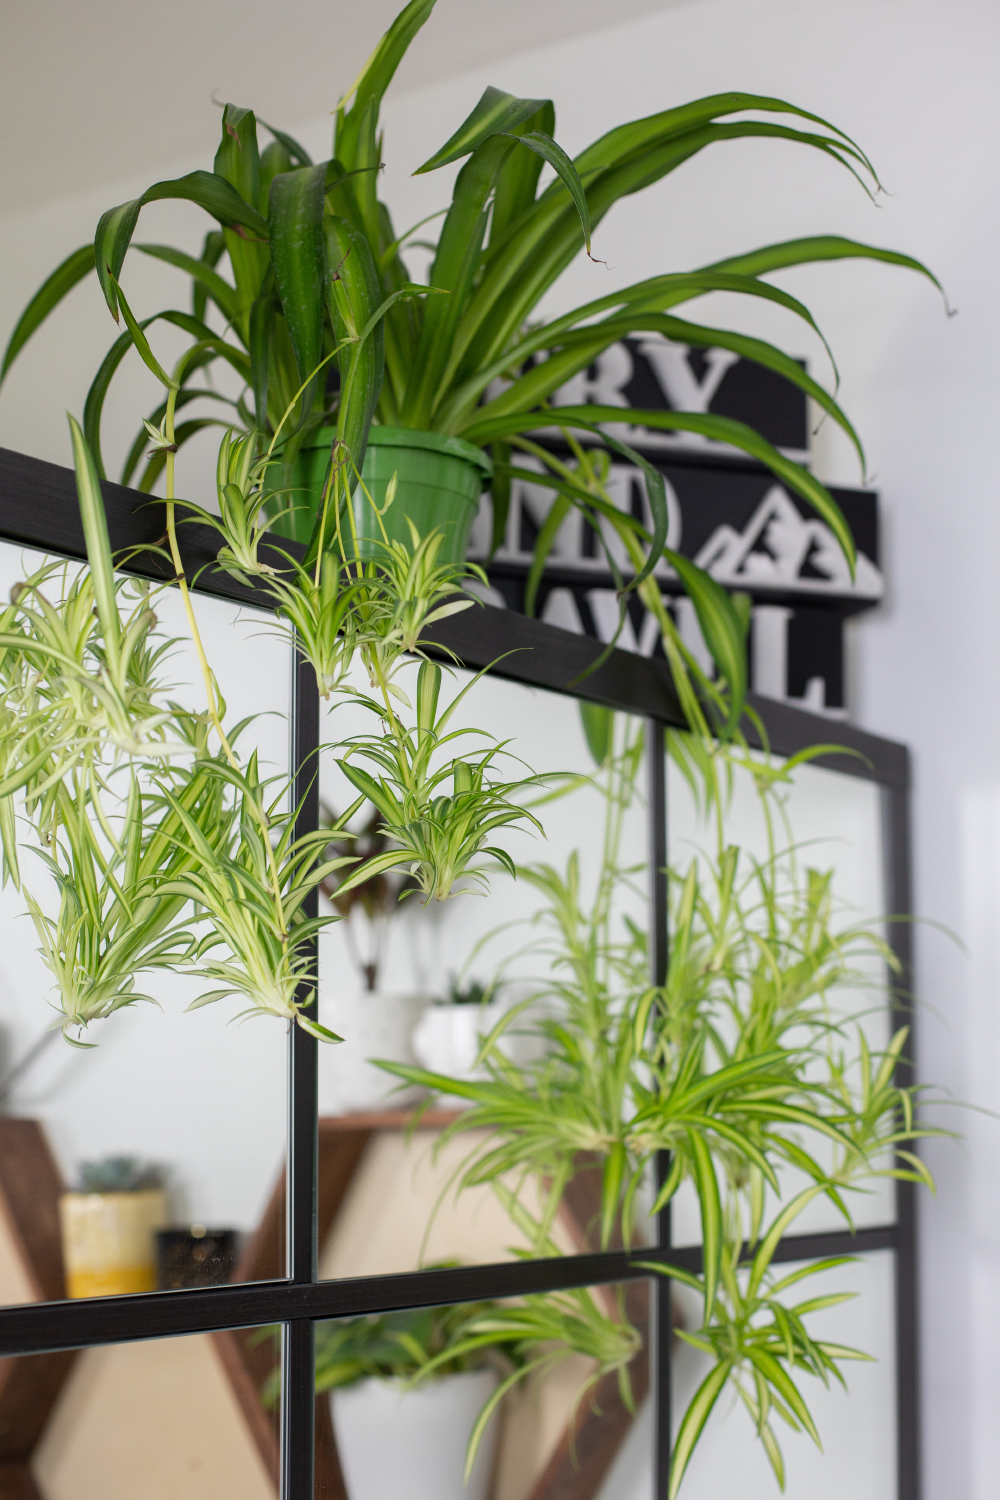 XXL Pflanzen Makeover Wohnzimmer / Home Office + DIY für stylischen Pflanzenhalter